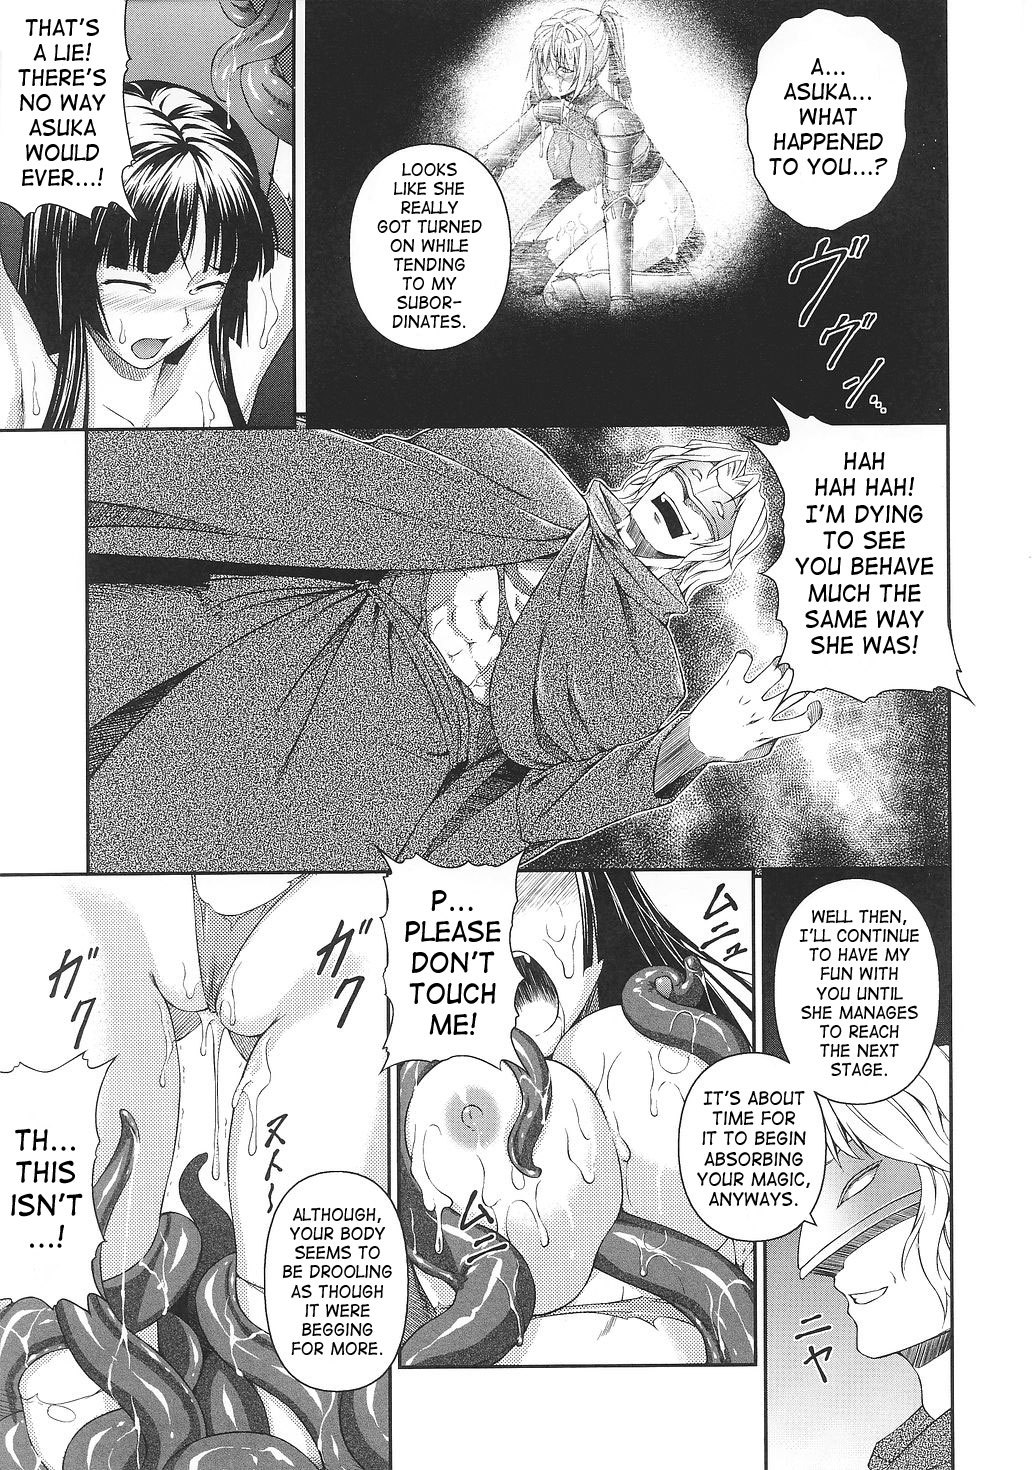 Asuka and Shizuru 47 hentai manga